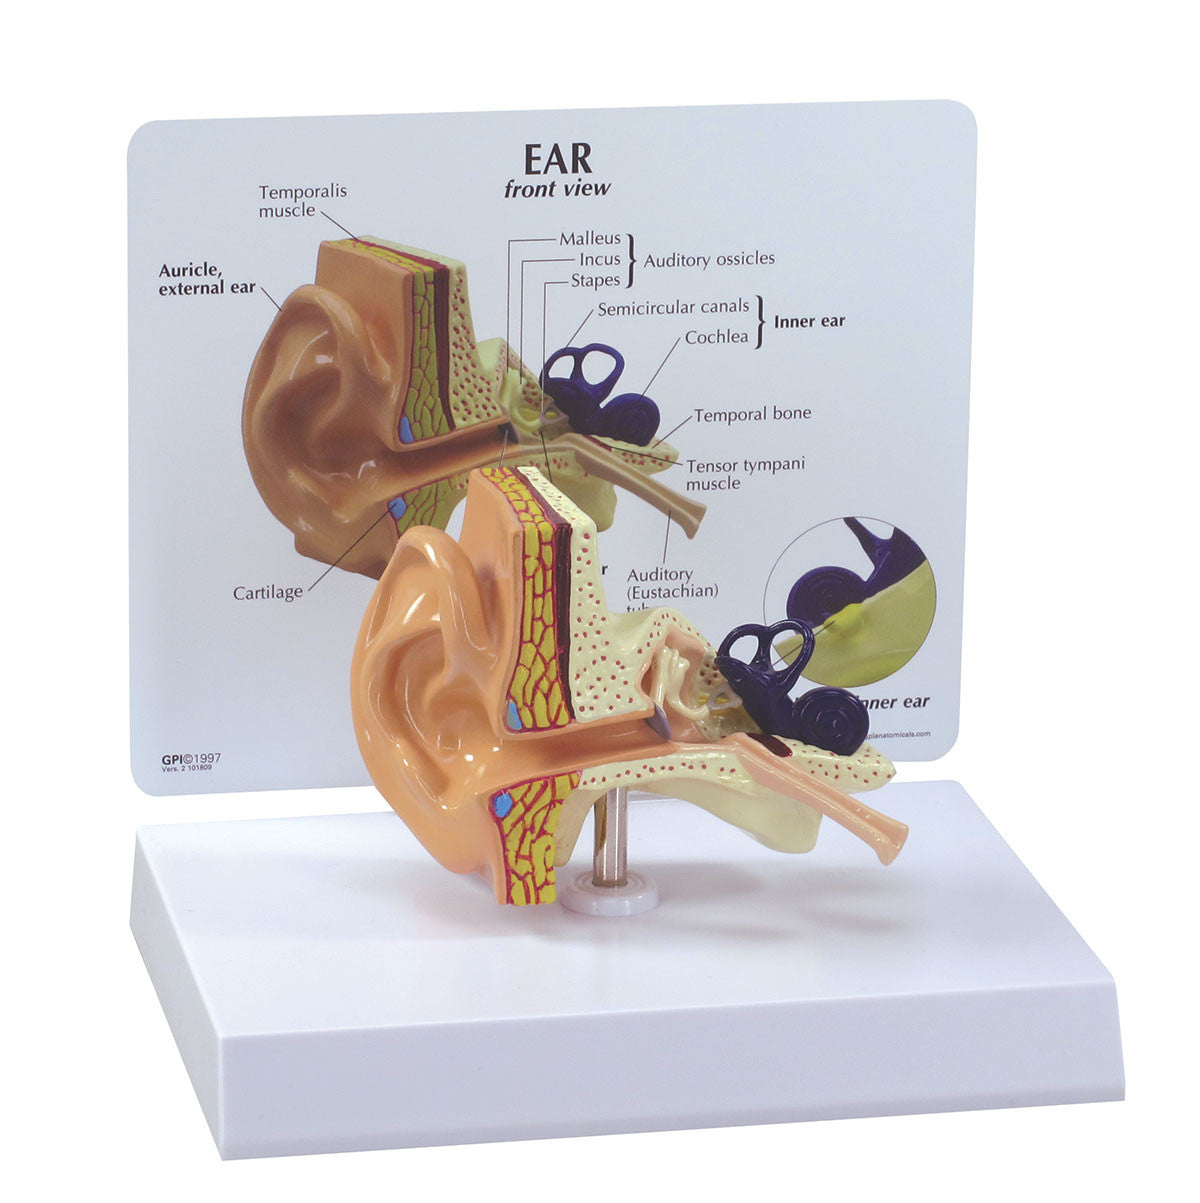 The Ear model